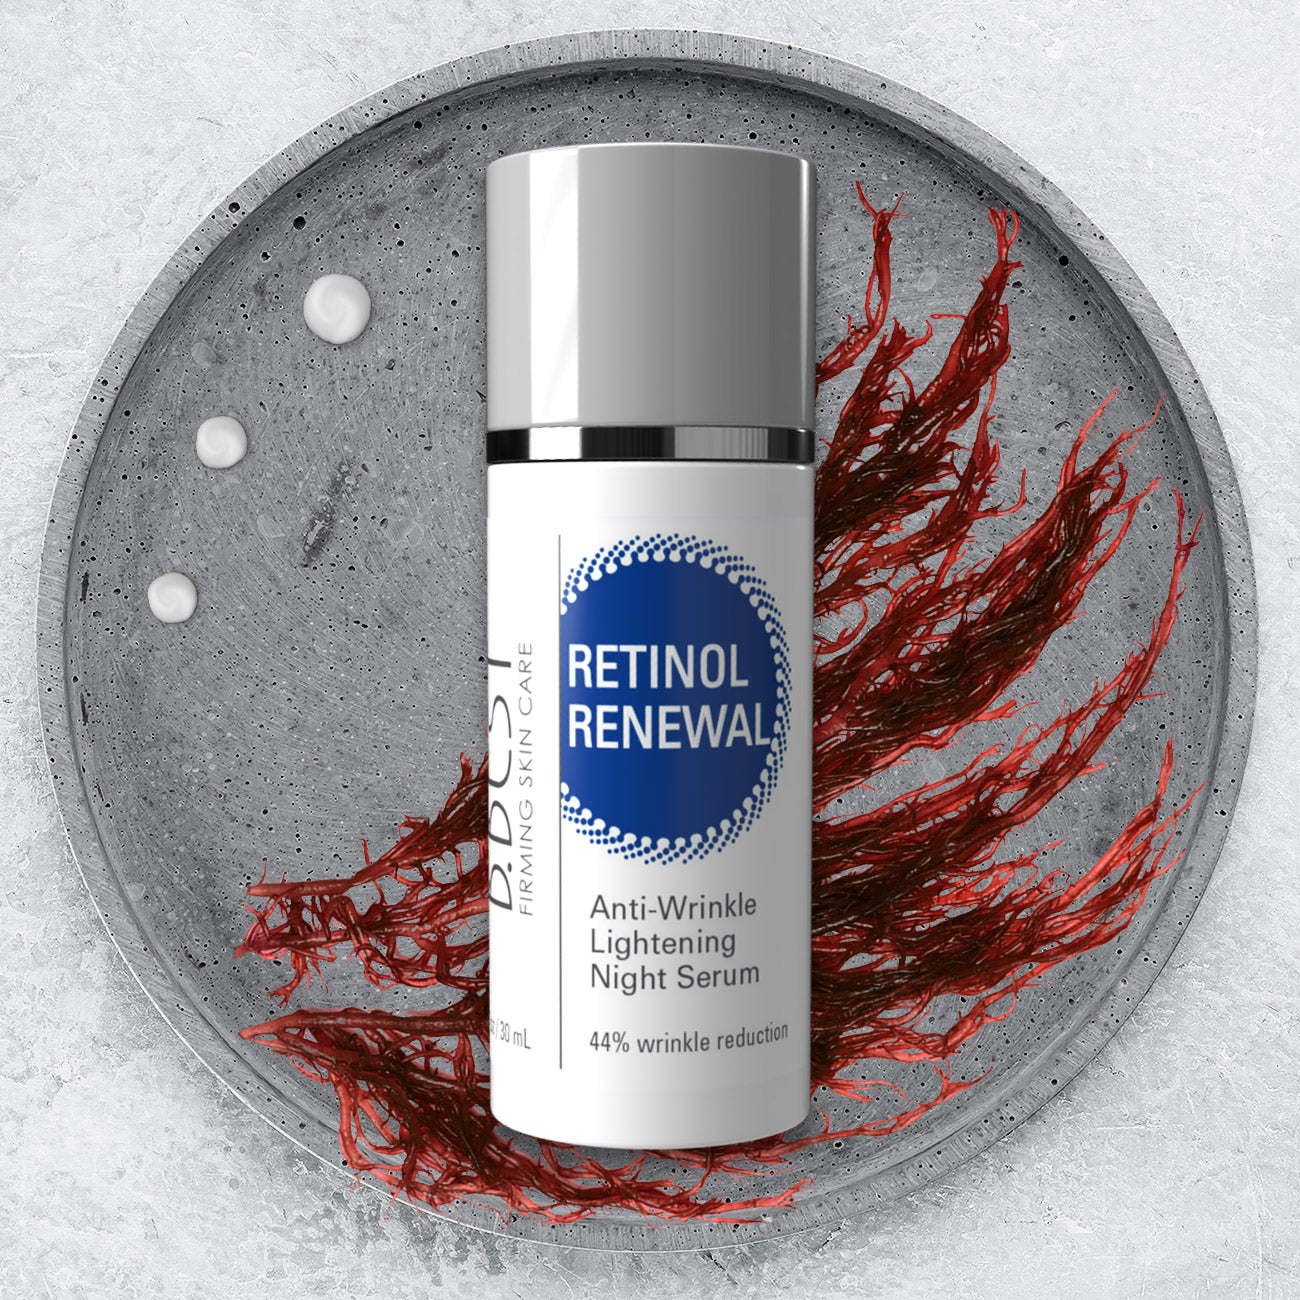 Retinol Renewal Anti-Wrinkle Night Serum 1 oz